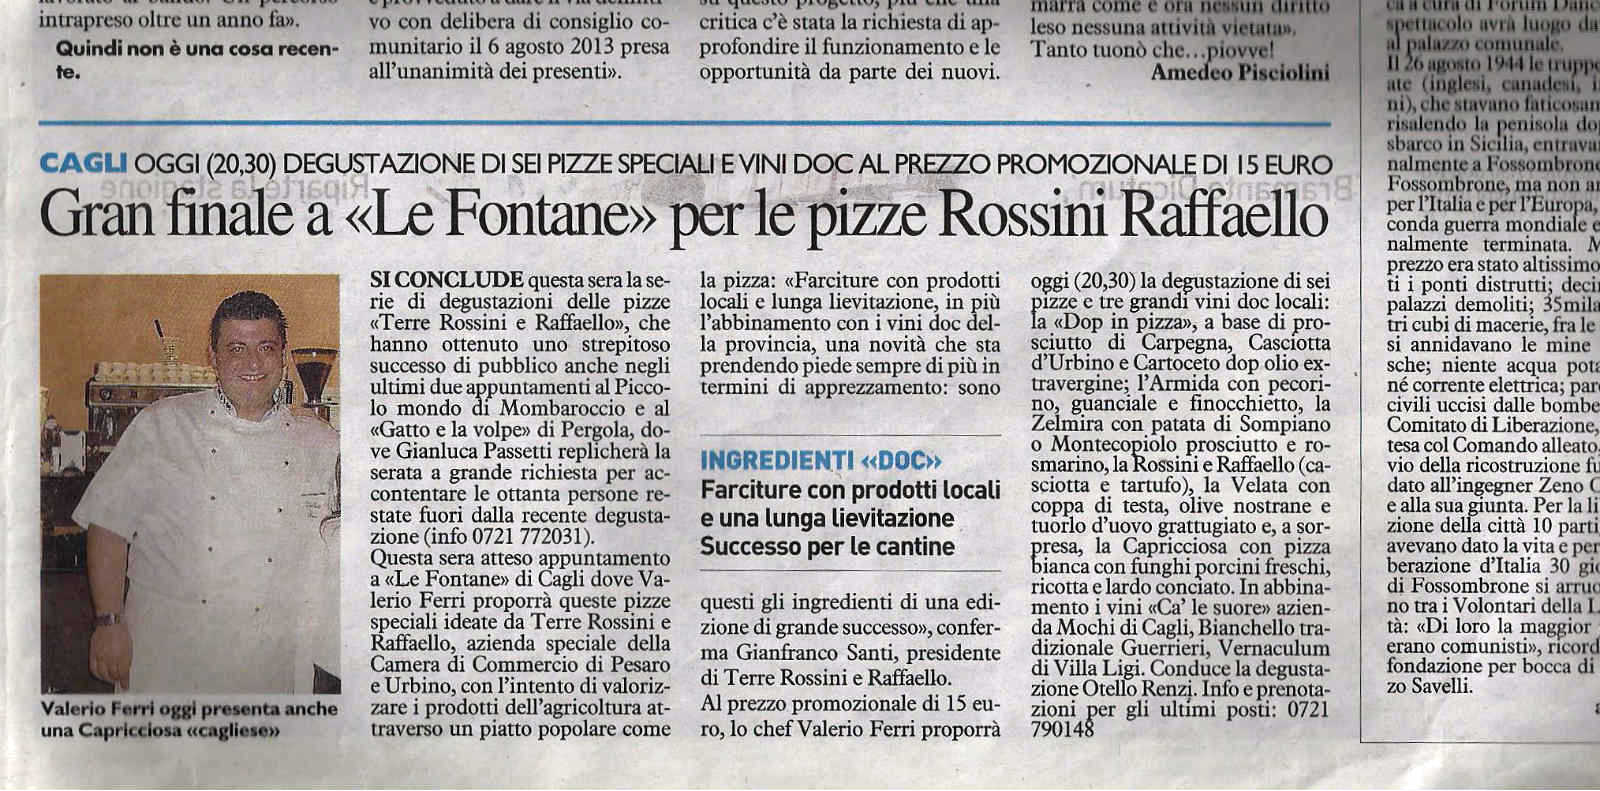 Gran finale a “Le Fontante” per le pizze Rossini Raffaello